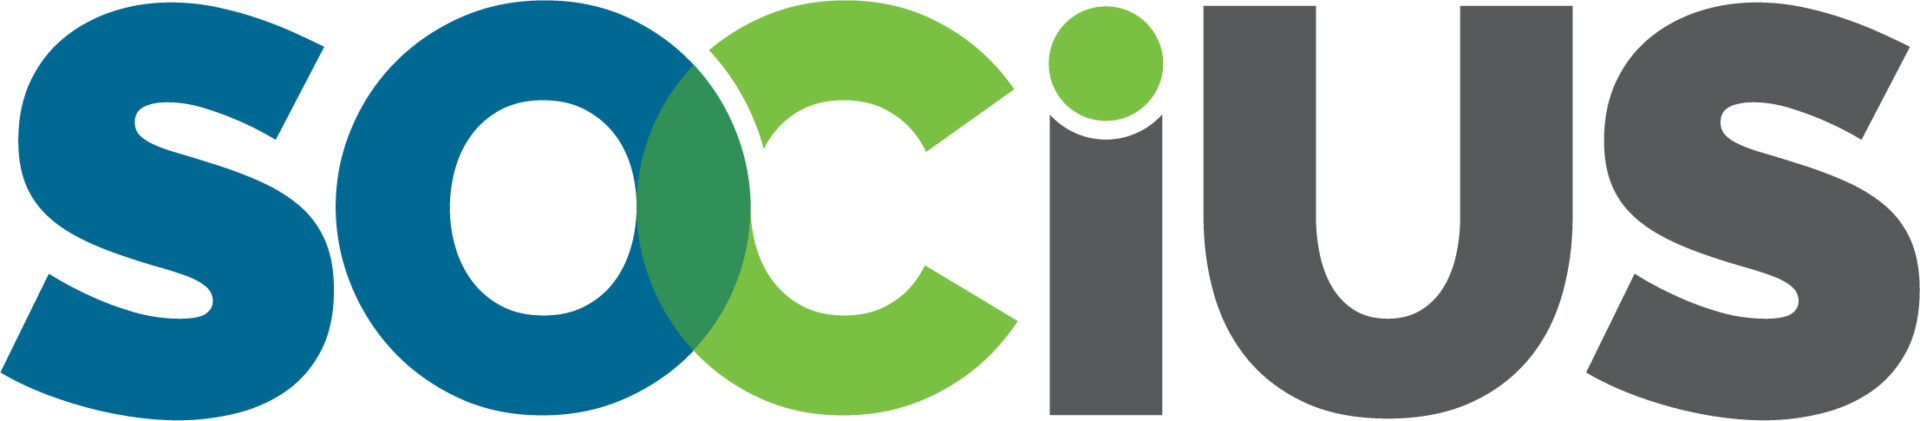 Socius-logo-4c.jpg (1)